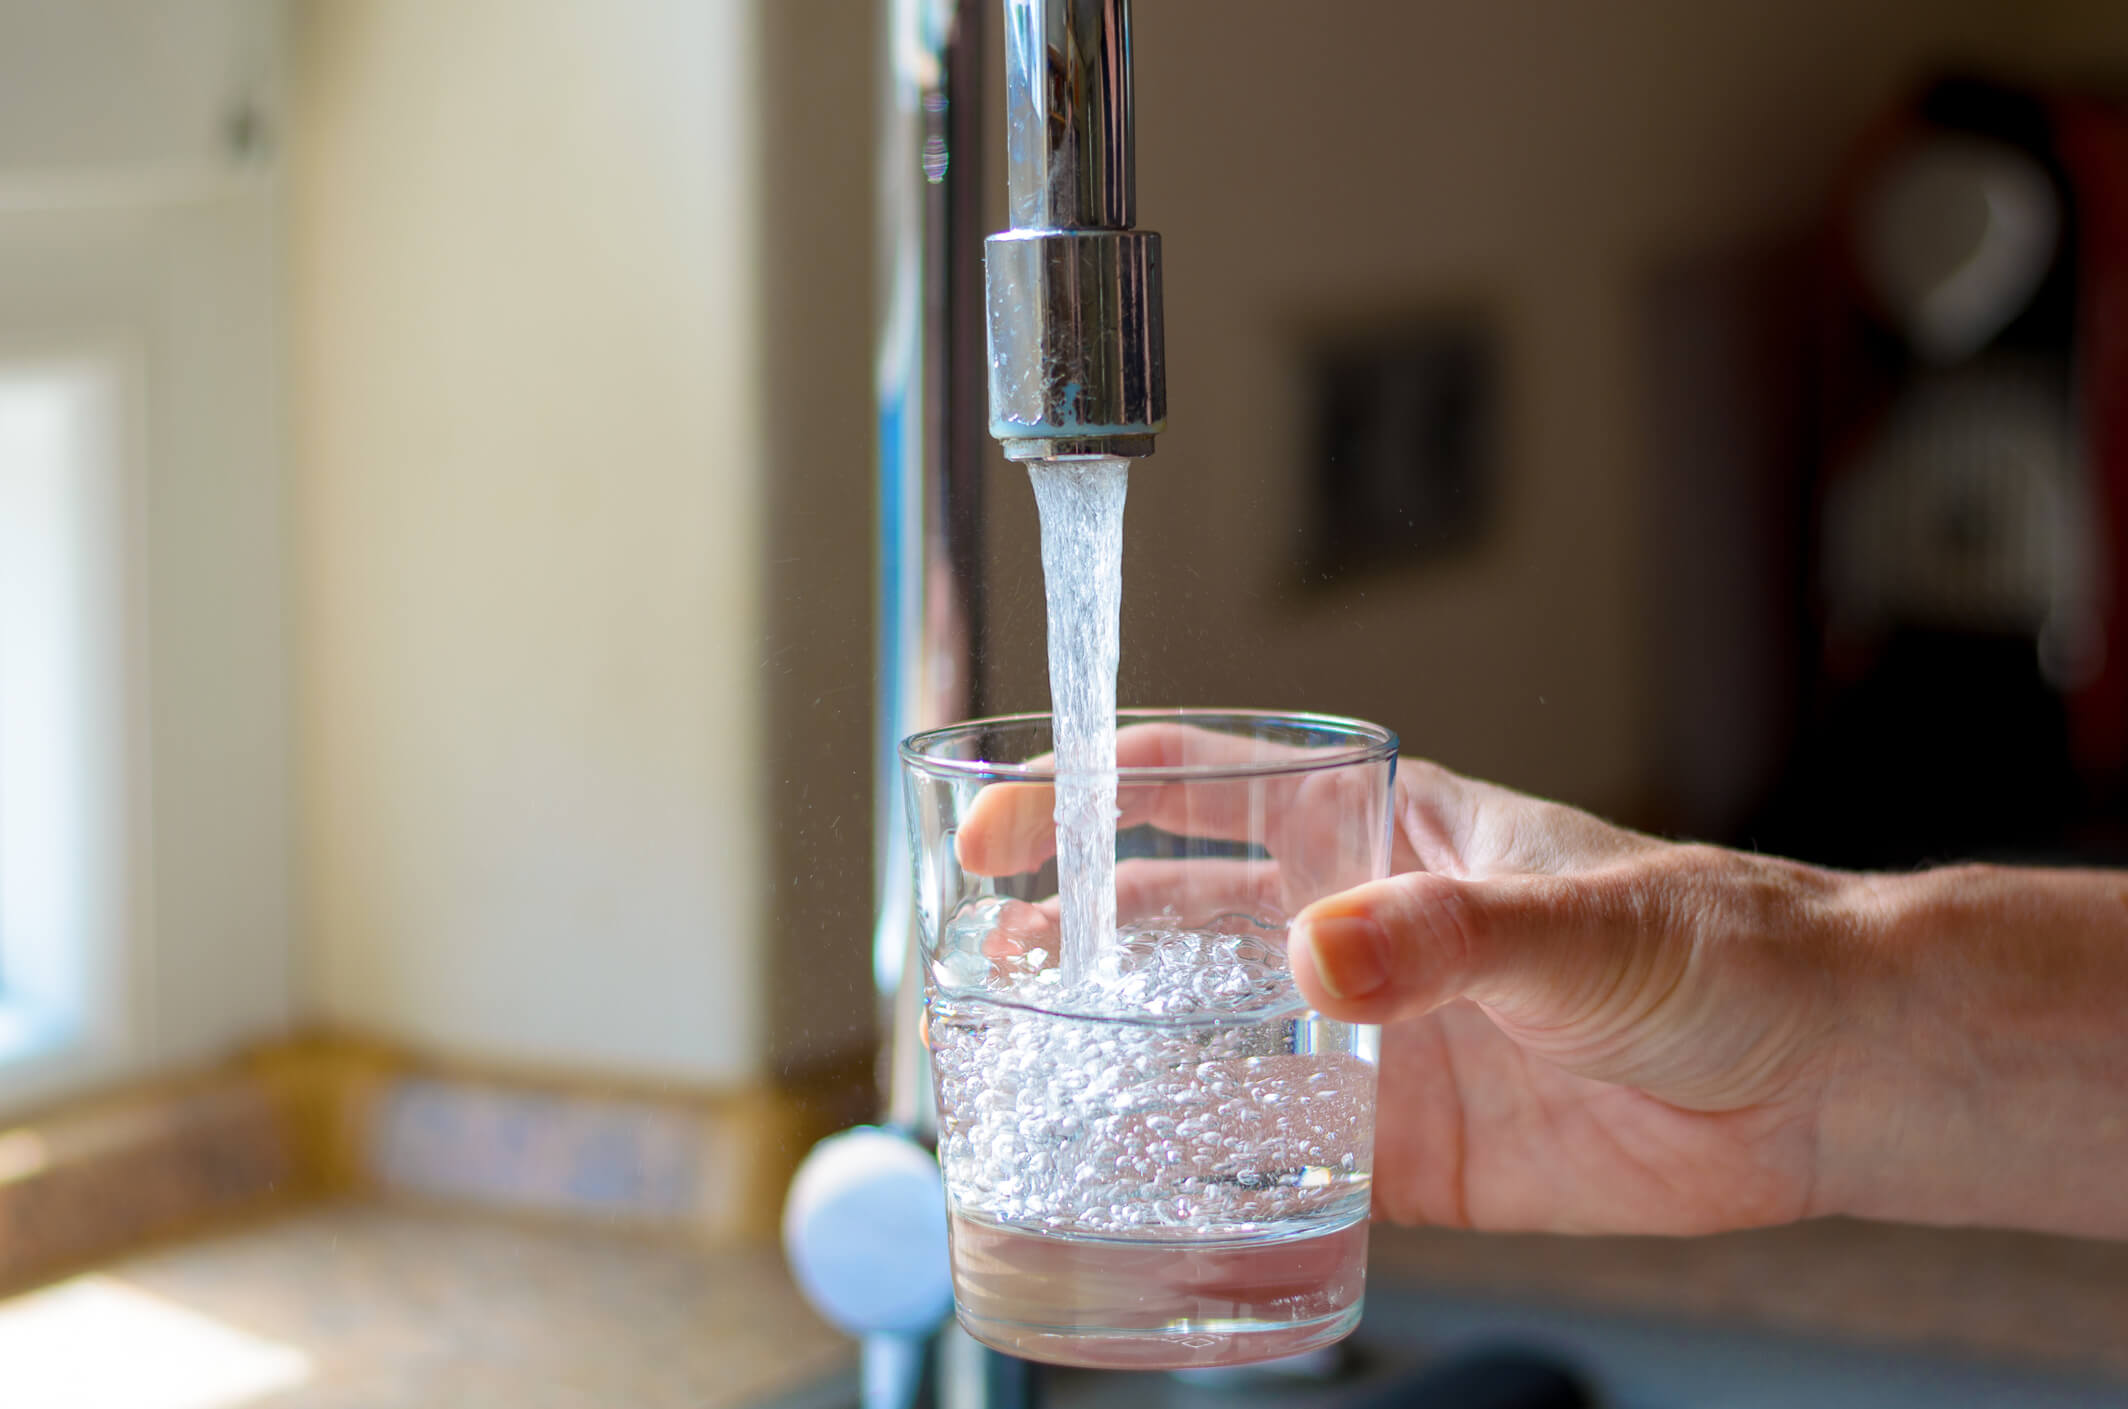 Água para consumo em instituições educacionais e de saúde passará por testes regulares